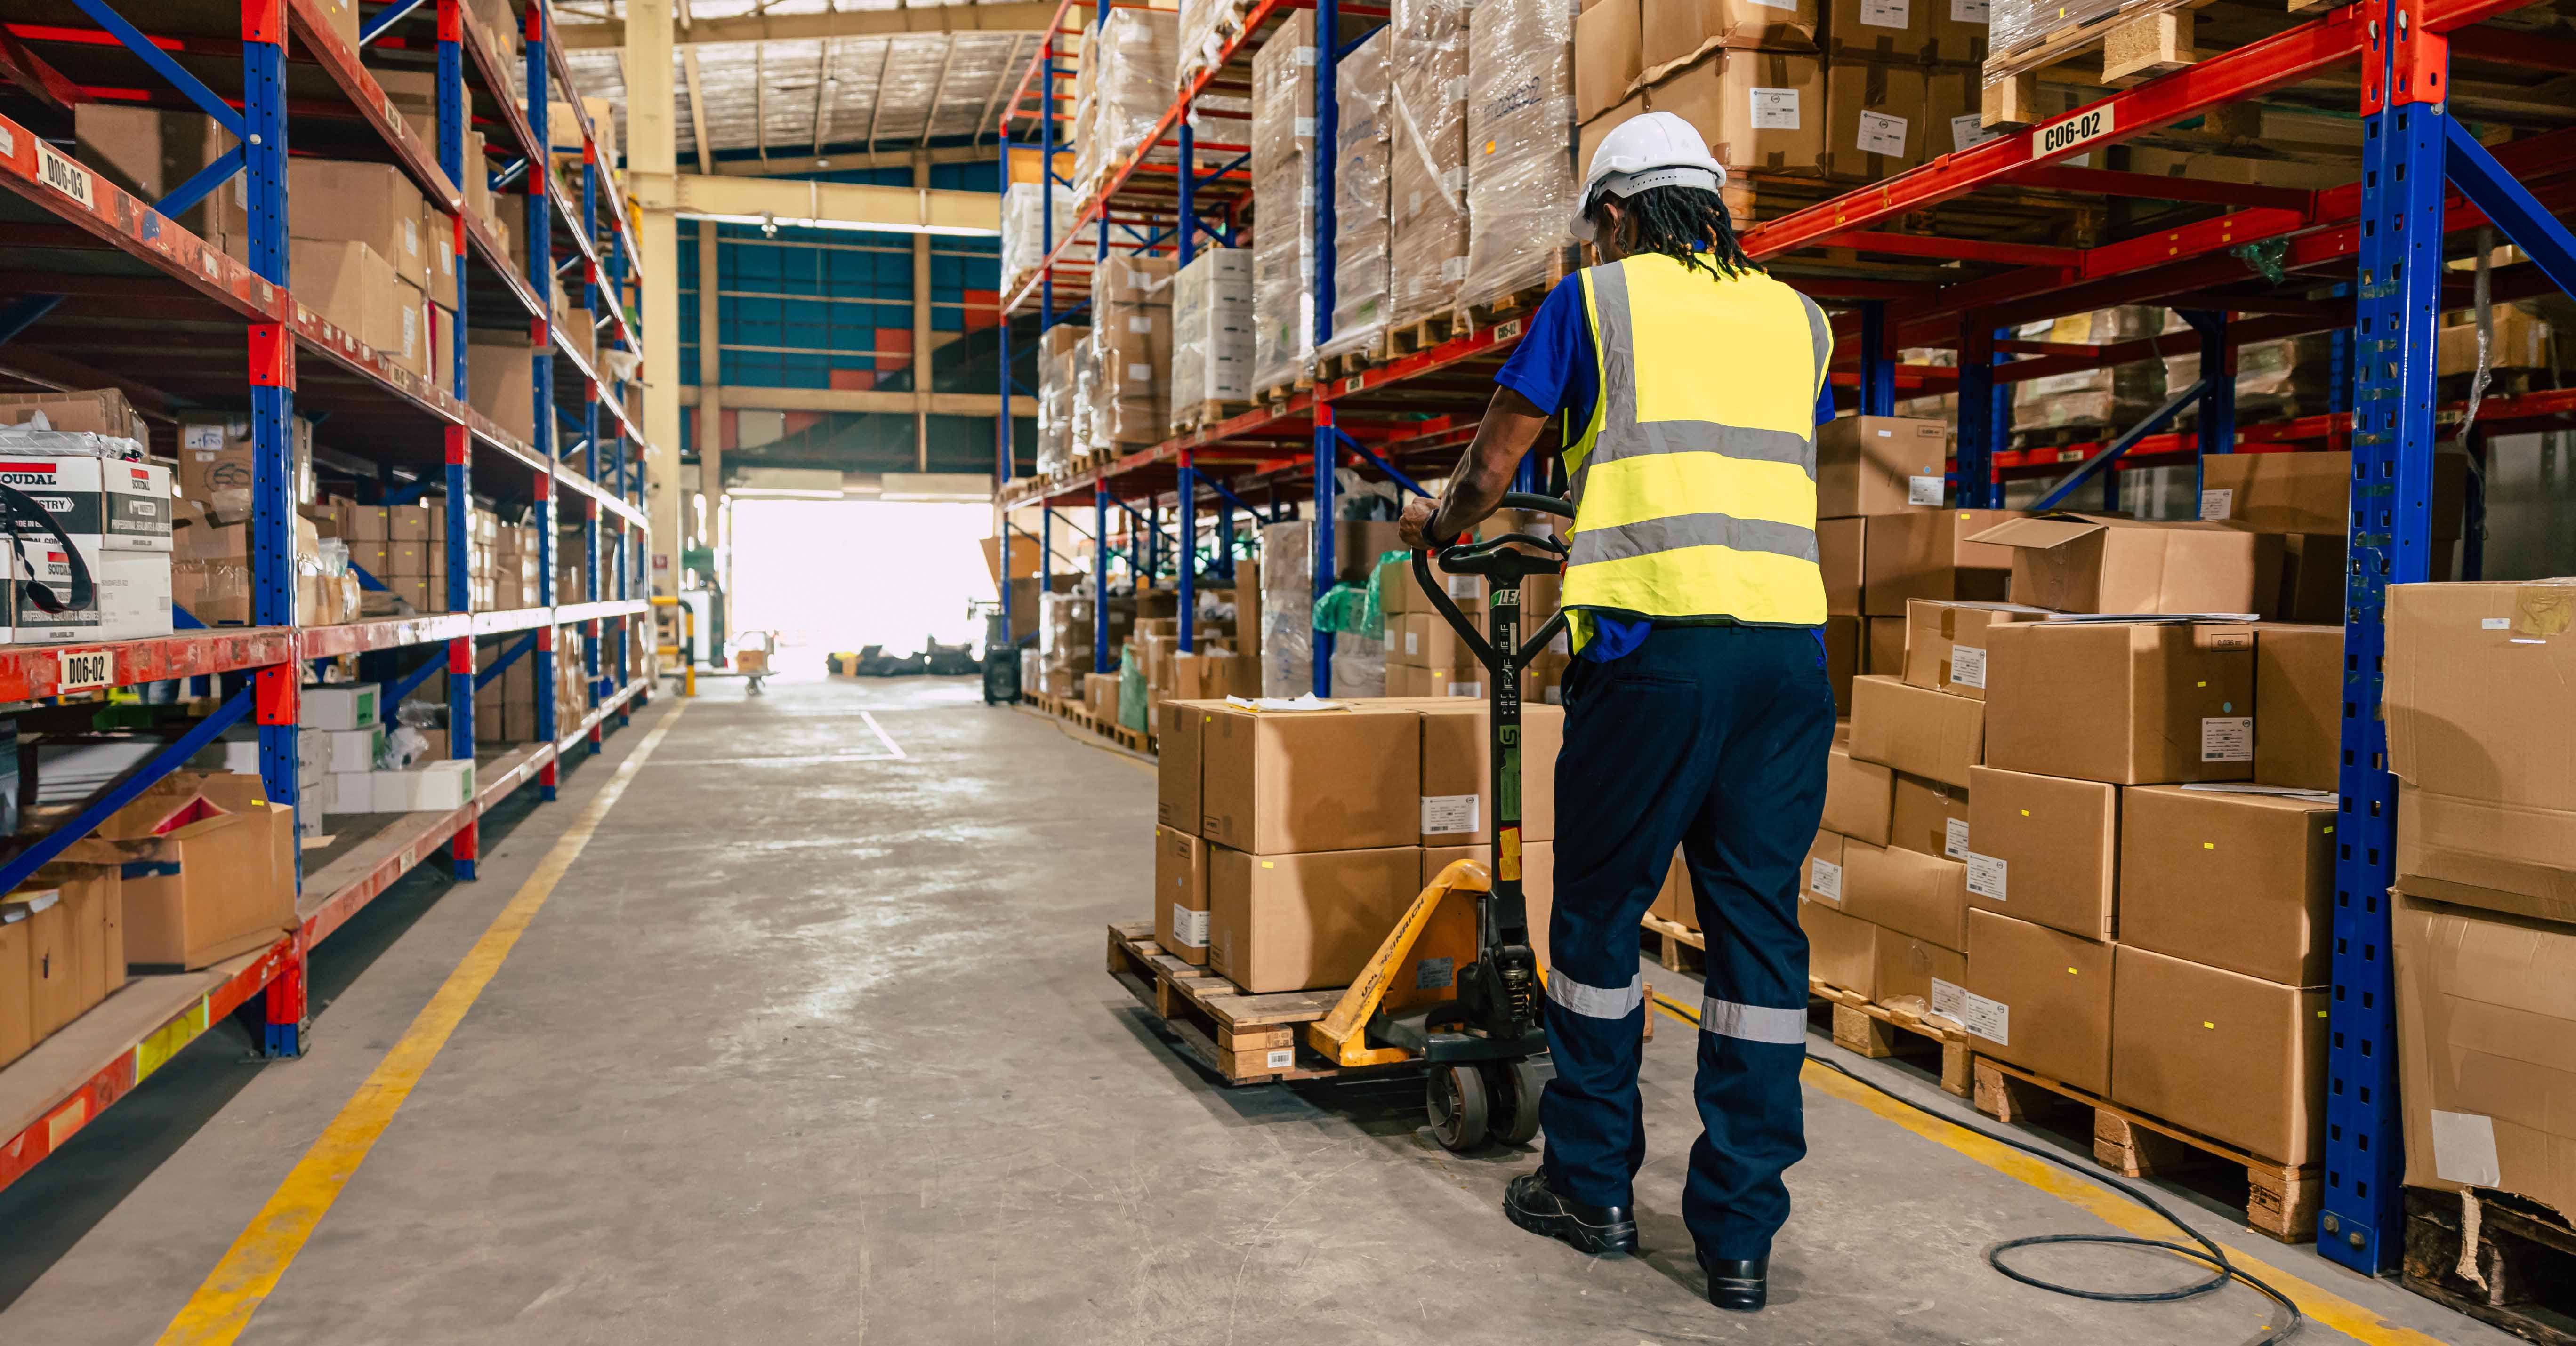 Lernen Sie die Merkmale von Logistik und Lieferkette kennen, um deren Unterschiede besser zu verstehen und Ihre Unternehmensstrategie zu optimieren.